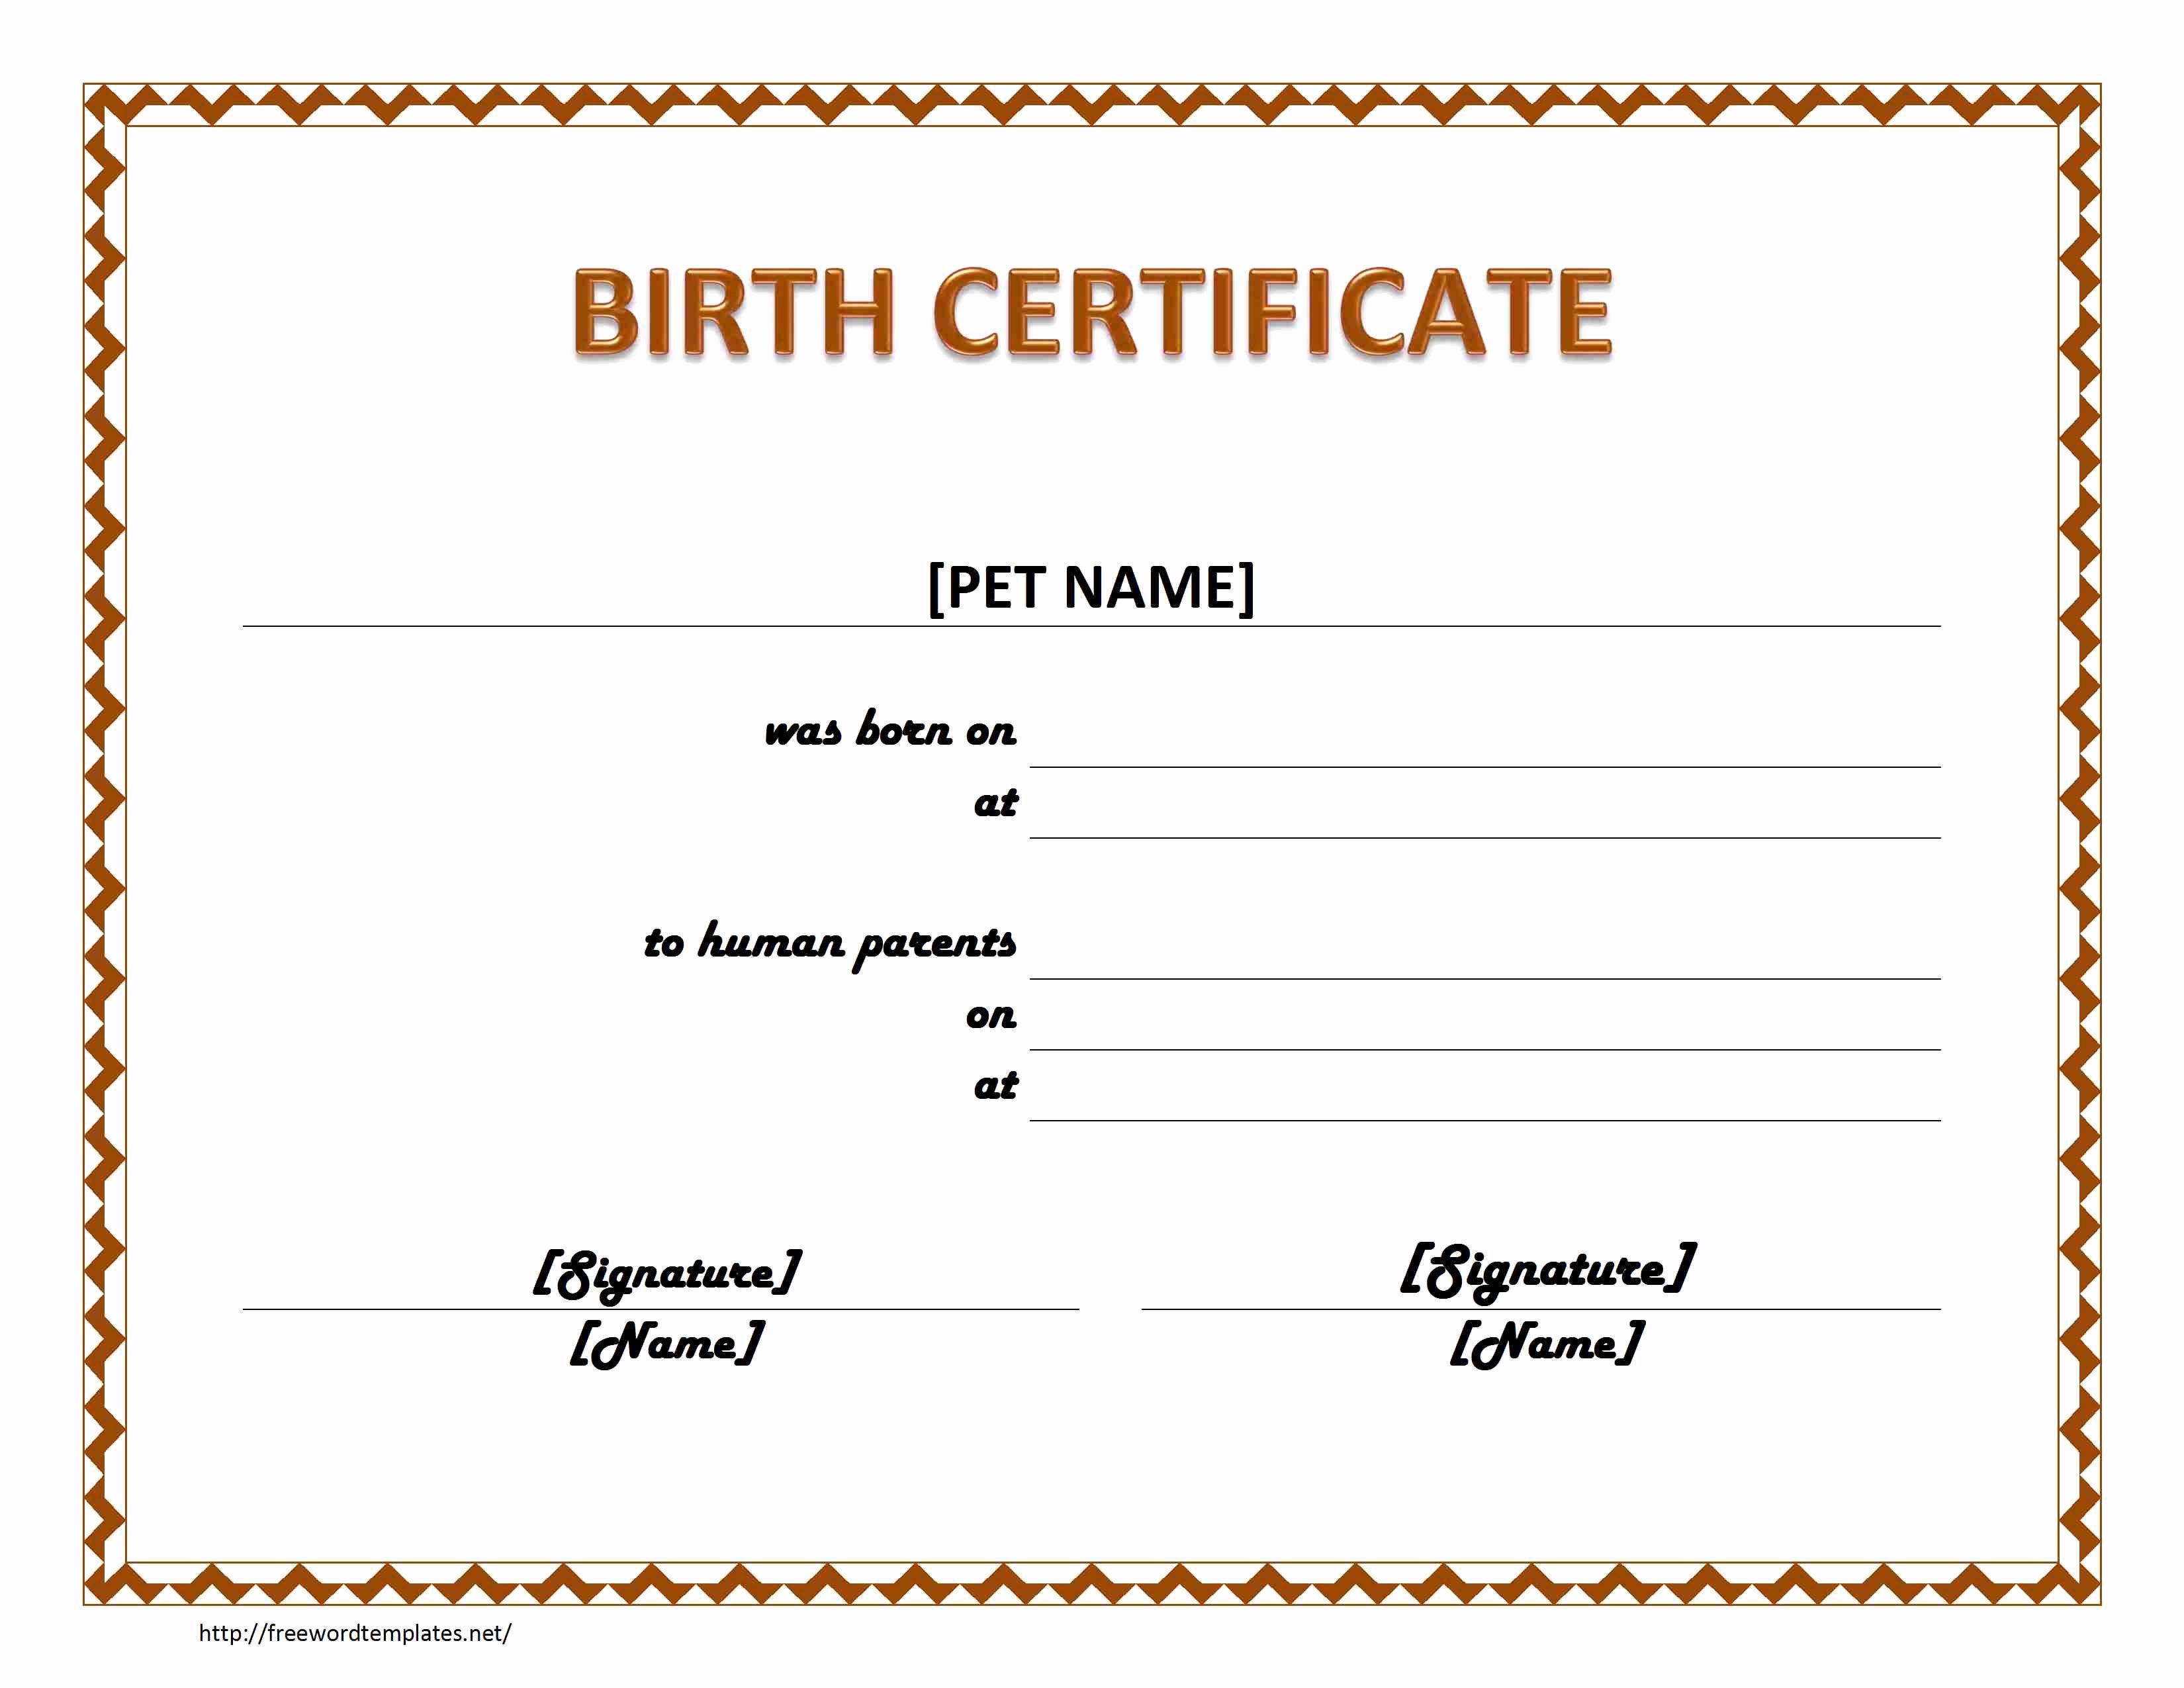 Pet Fish Birth Certificate Pet Birth Certificate